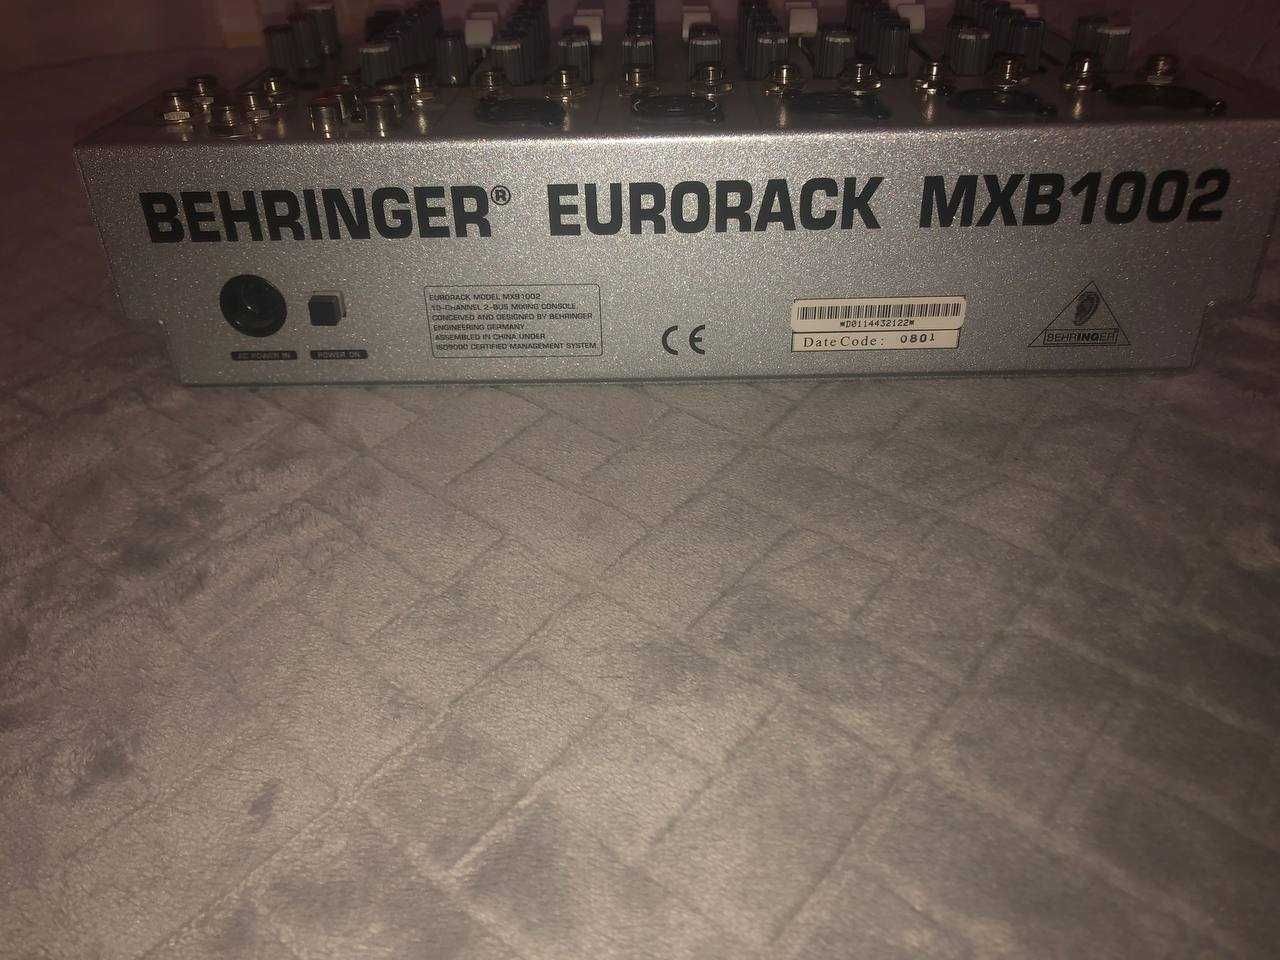 Behringer EURORACK MXB1002